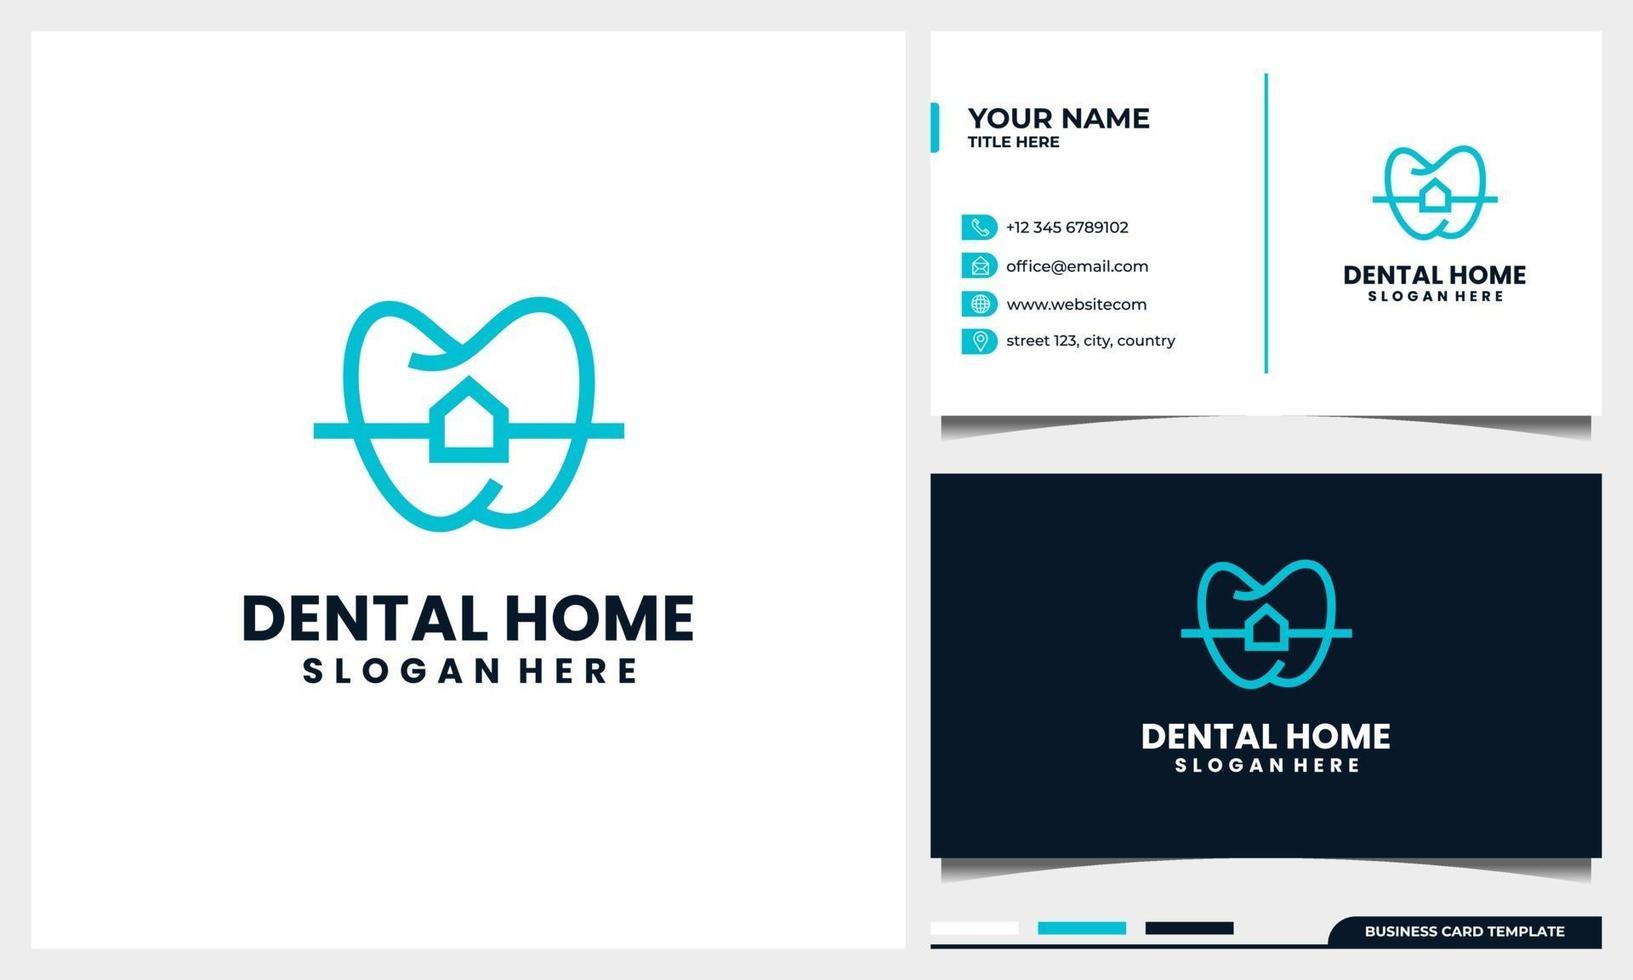 Diseño de logotipo dental con estilo de arte lineal y concepto de hogar o casa vector